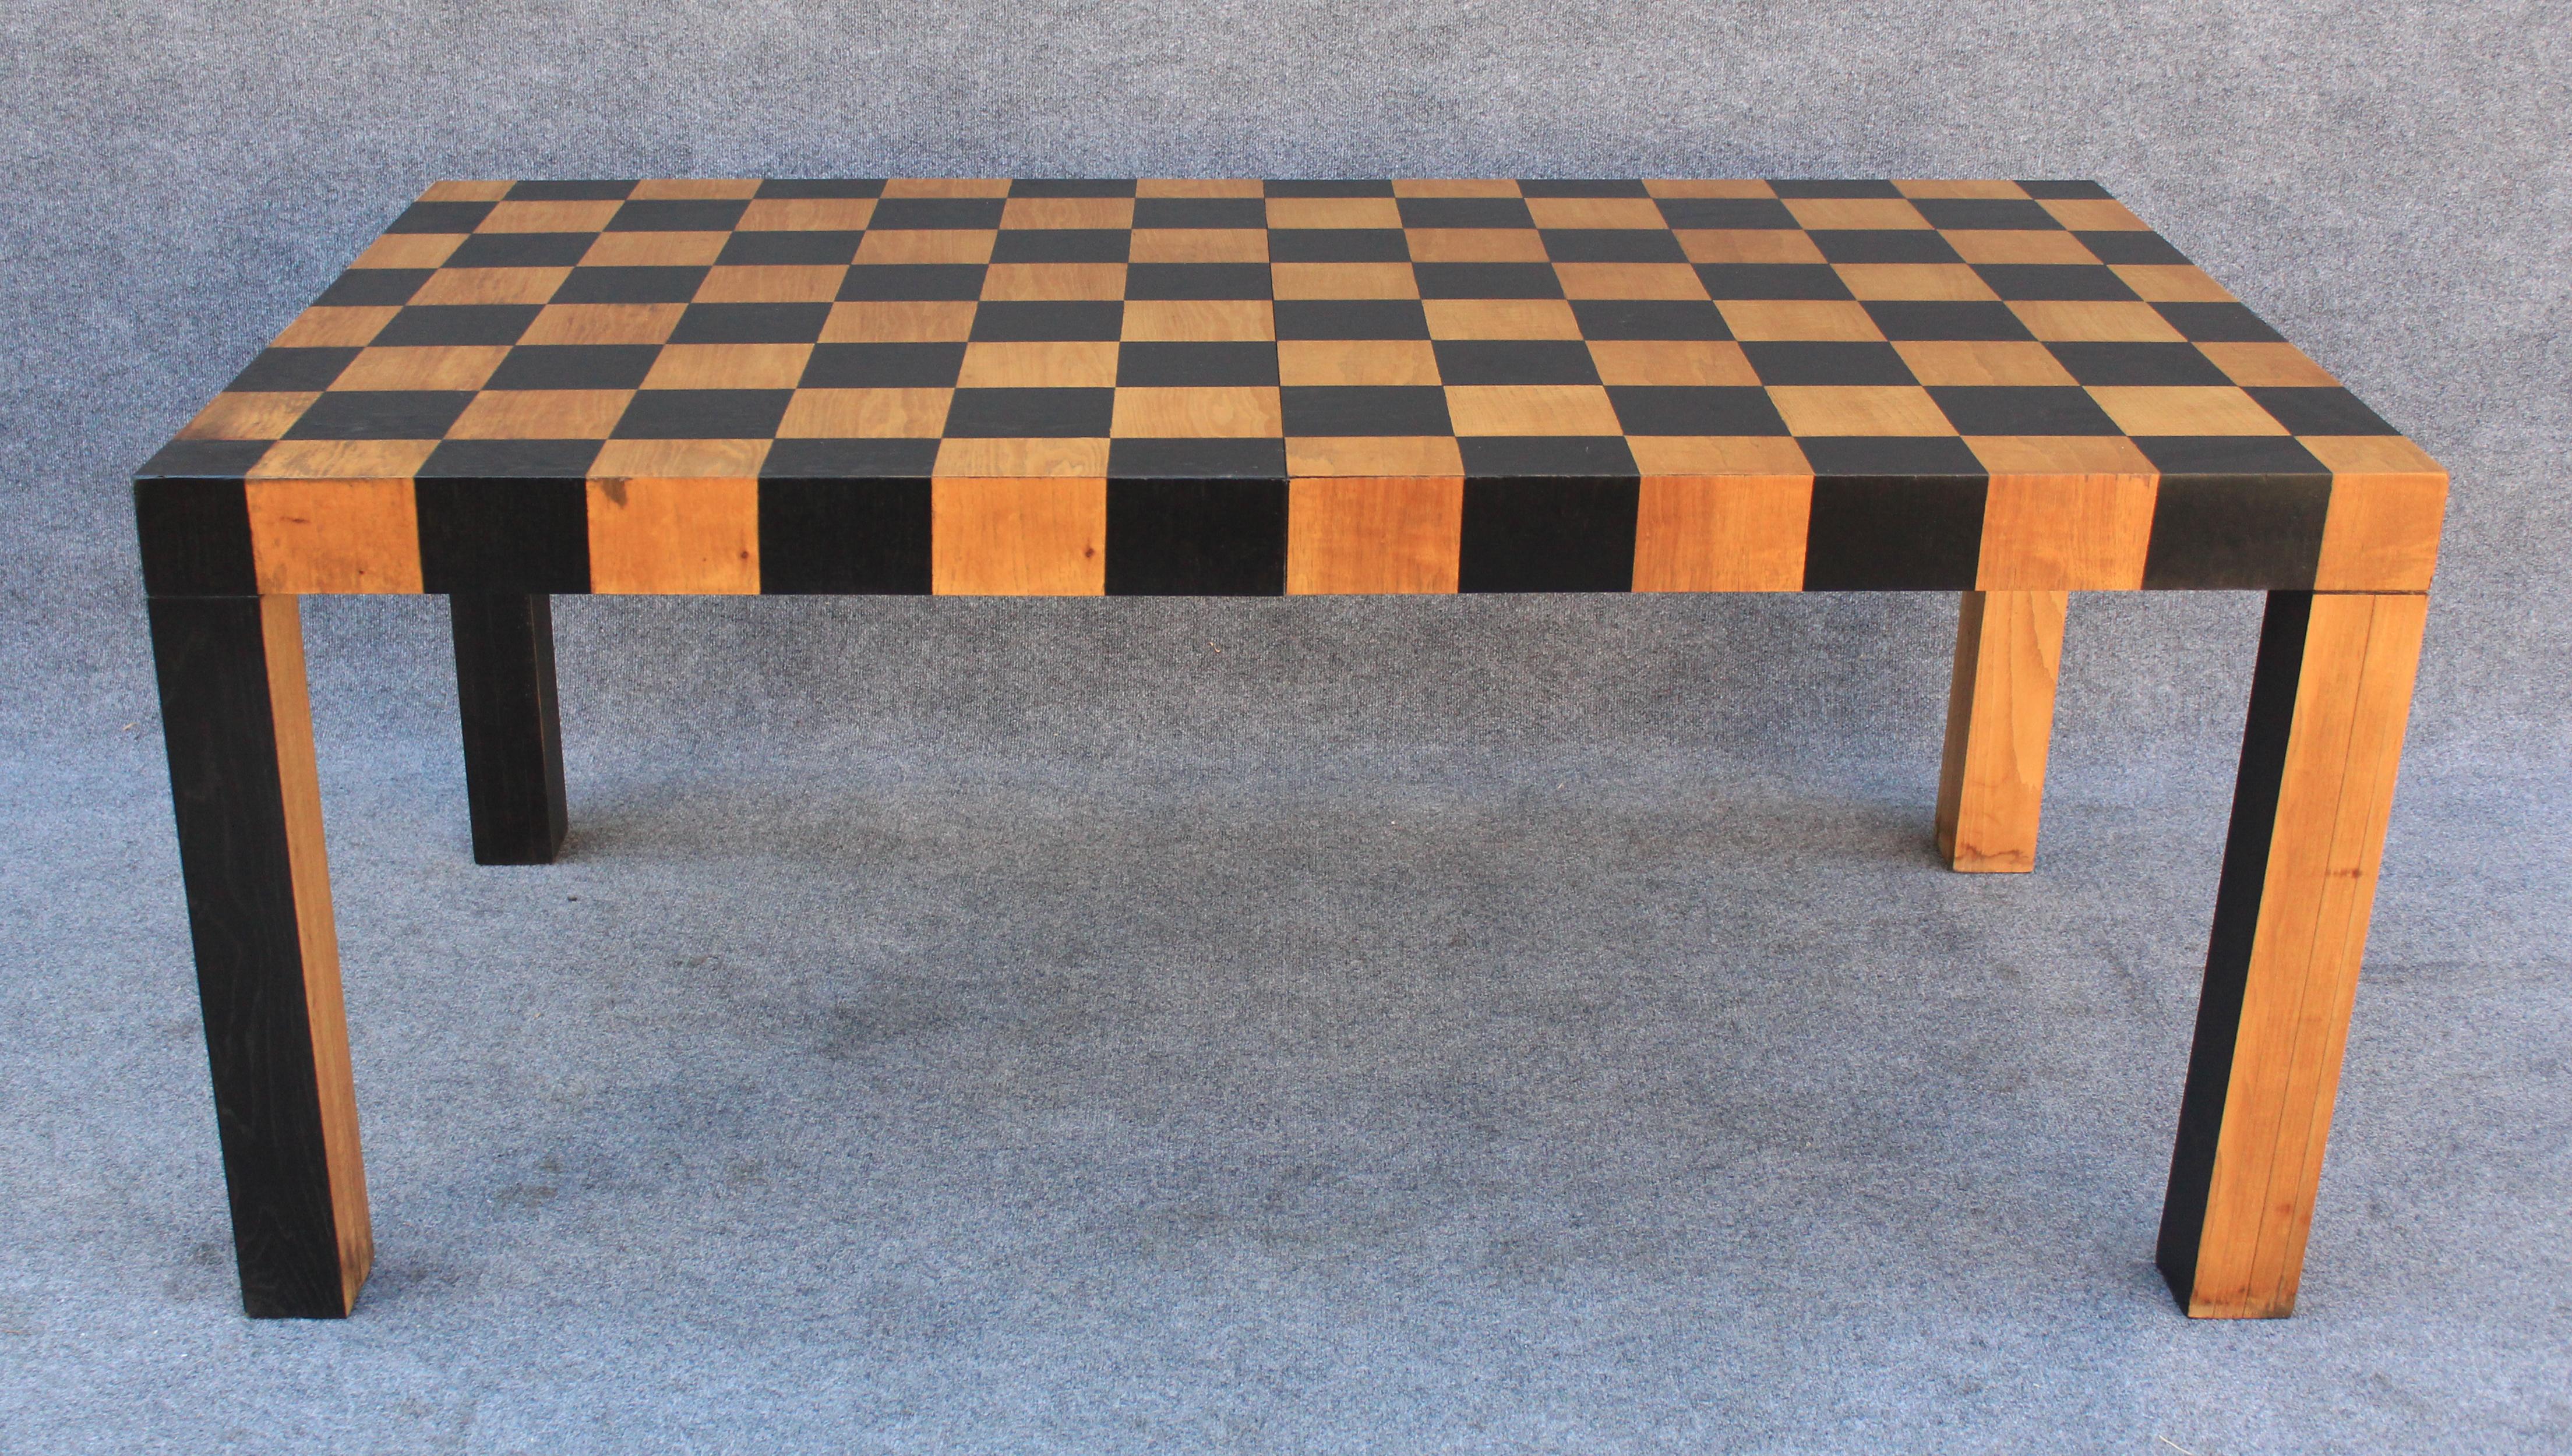 Dieser Tisch wurde in den späten 1970er Jahren nach den für Lane-Möbel bekannten anspruchsvollen Standards in einem ähnlichen Stil wie die beliebten Milo Baughman's Tische hergestellt. Der gesamte Tisch ist mit einem Raster von 8 x 14 Quadraten aus